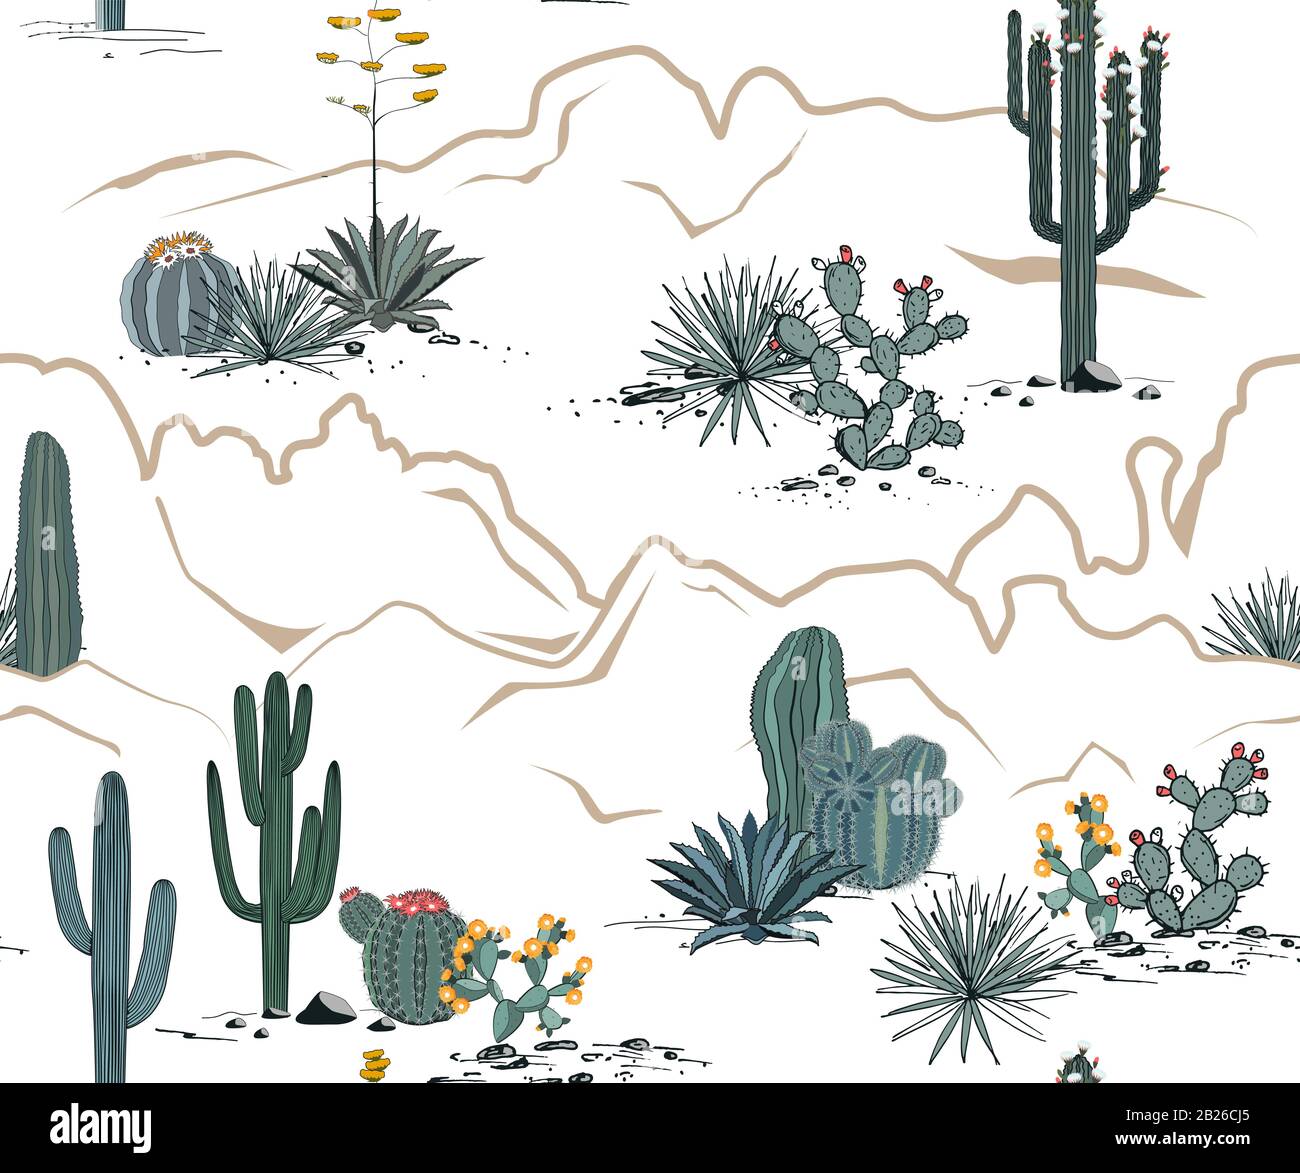 Wüstenmuster mit Bergen, blühenden Kakteen, Opuntien und Saguaro. Vektorhintergrund. Stock Vektor